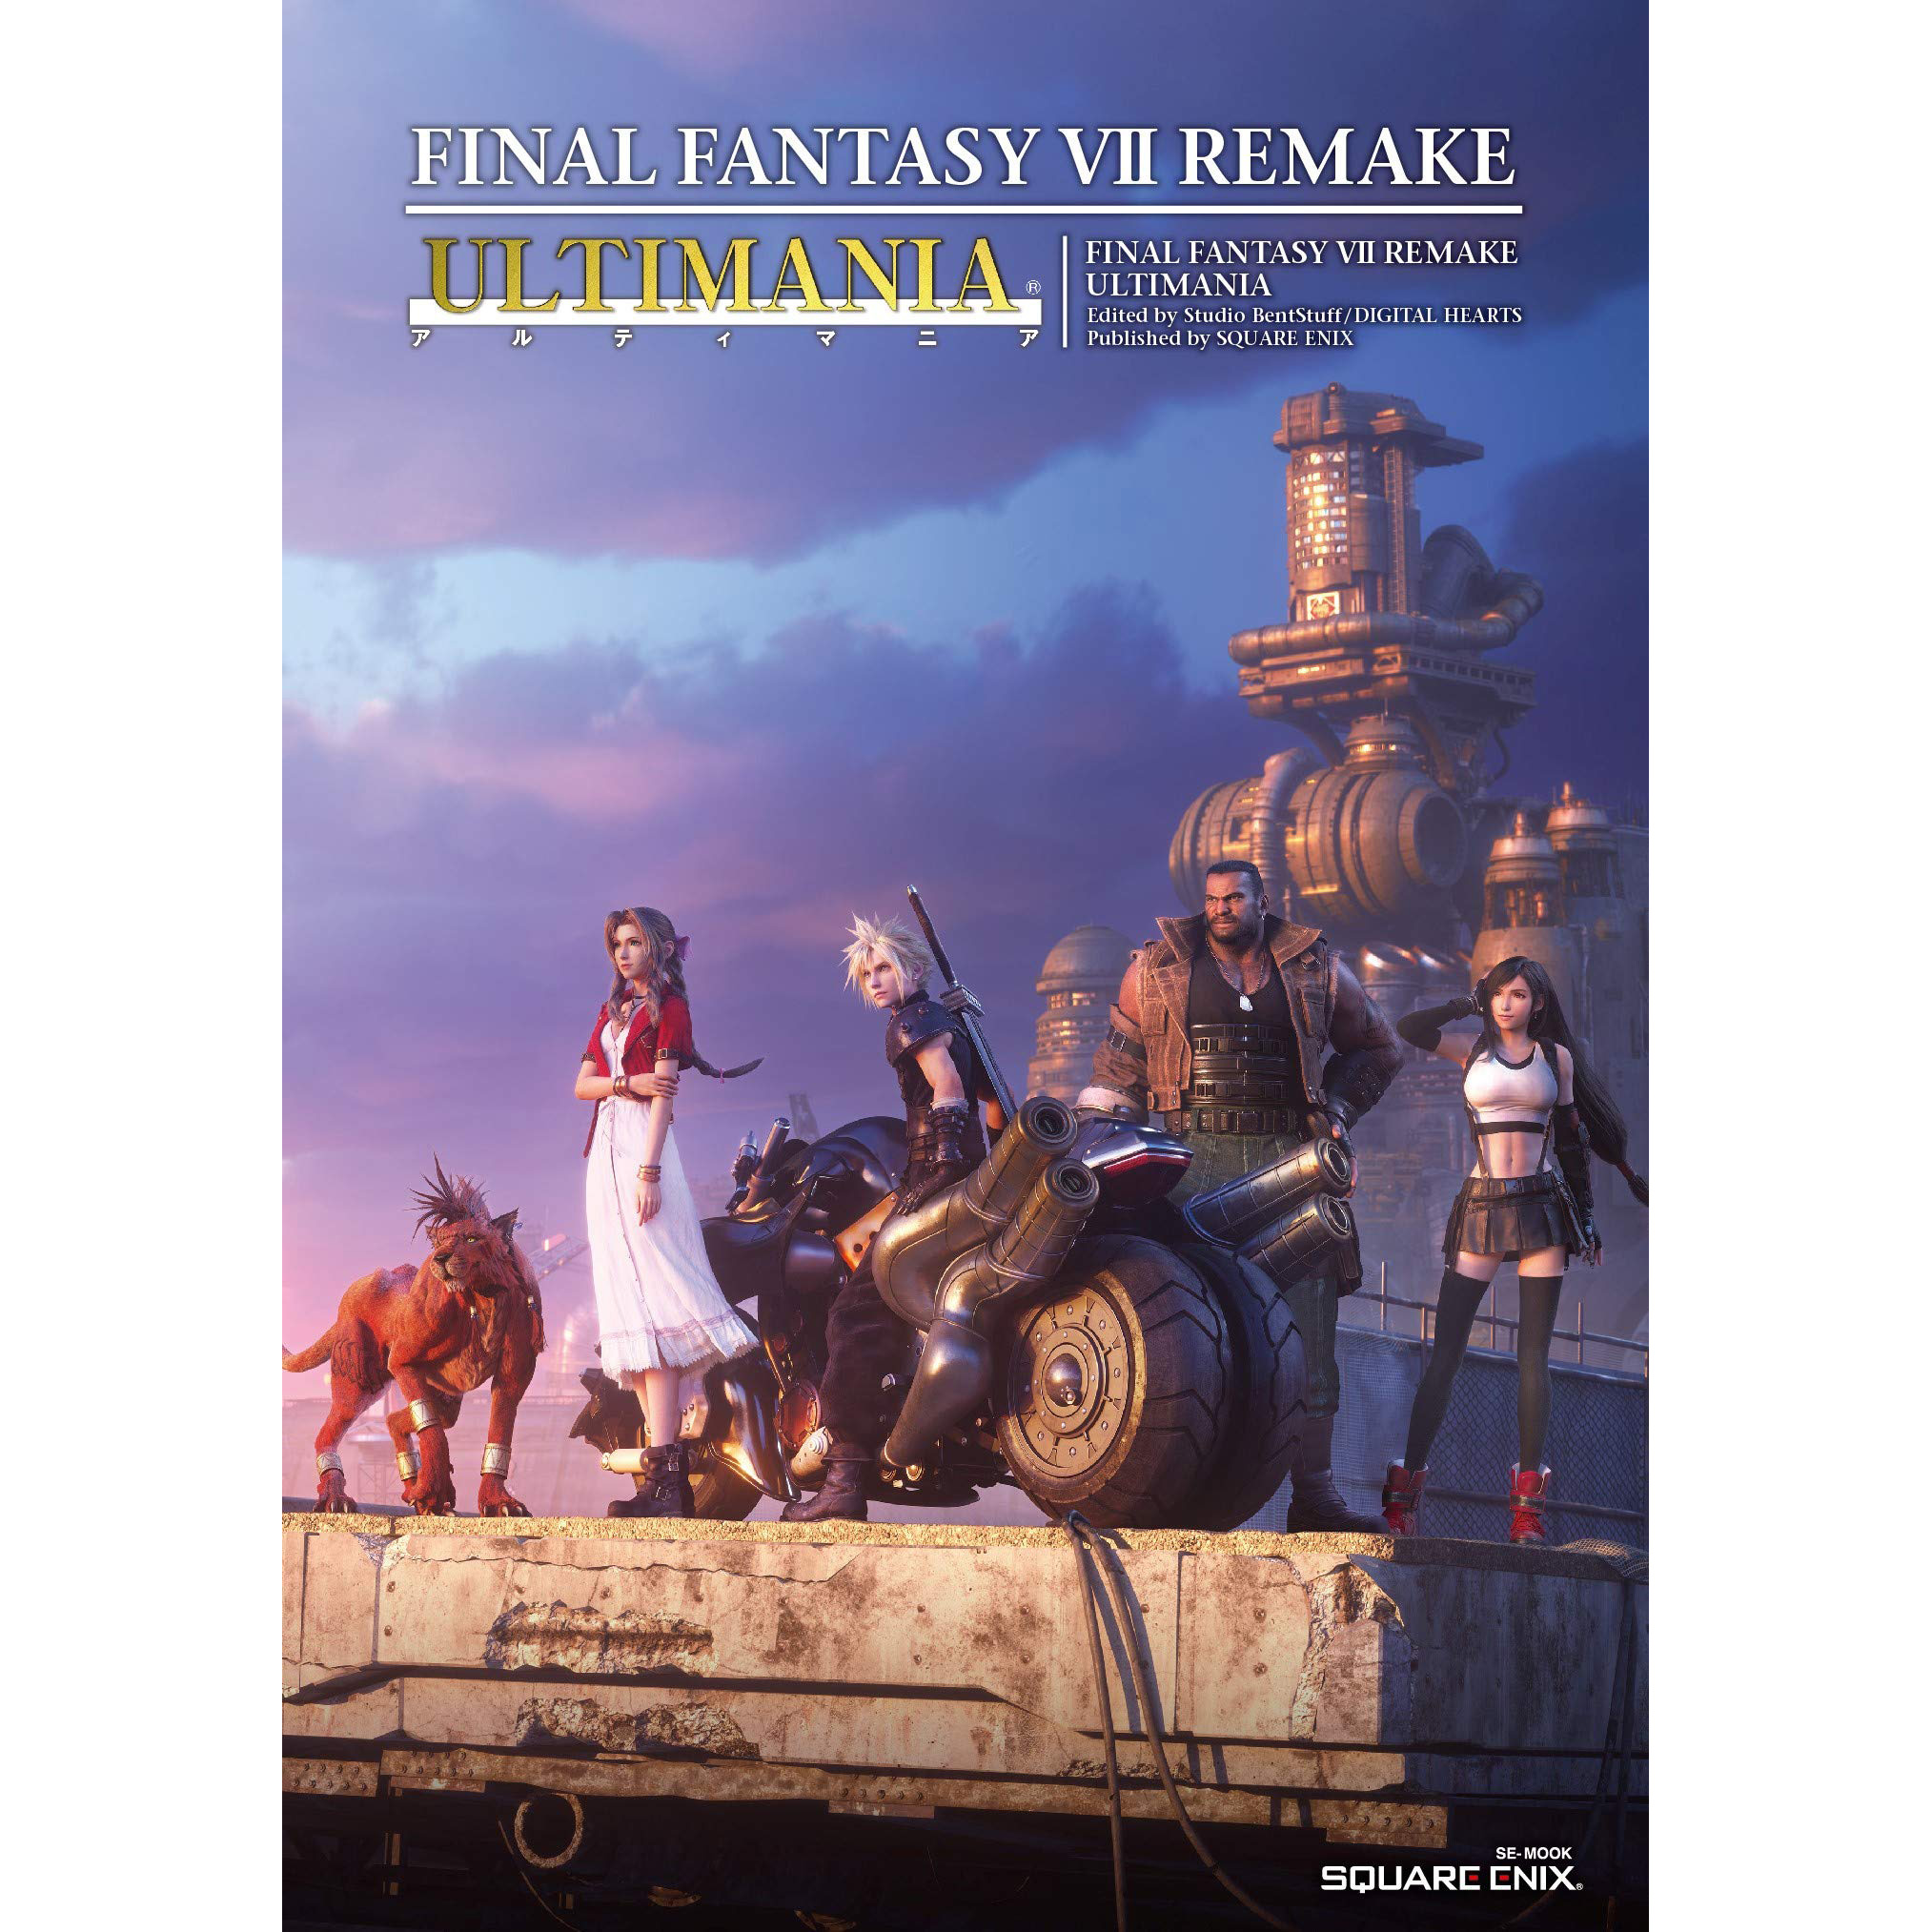 现货 最终幻想7攻略 重制版 FF7 REMAKE 官方公式设定集攻略 U本原版进口图书